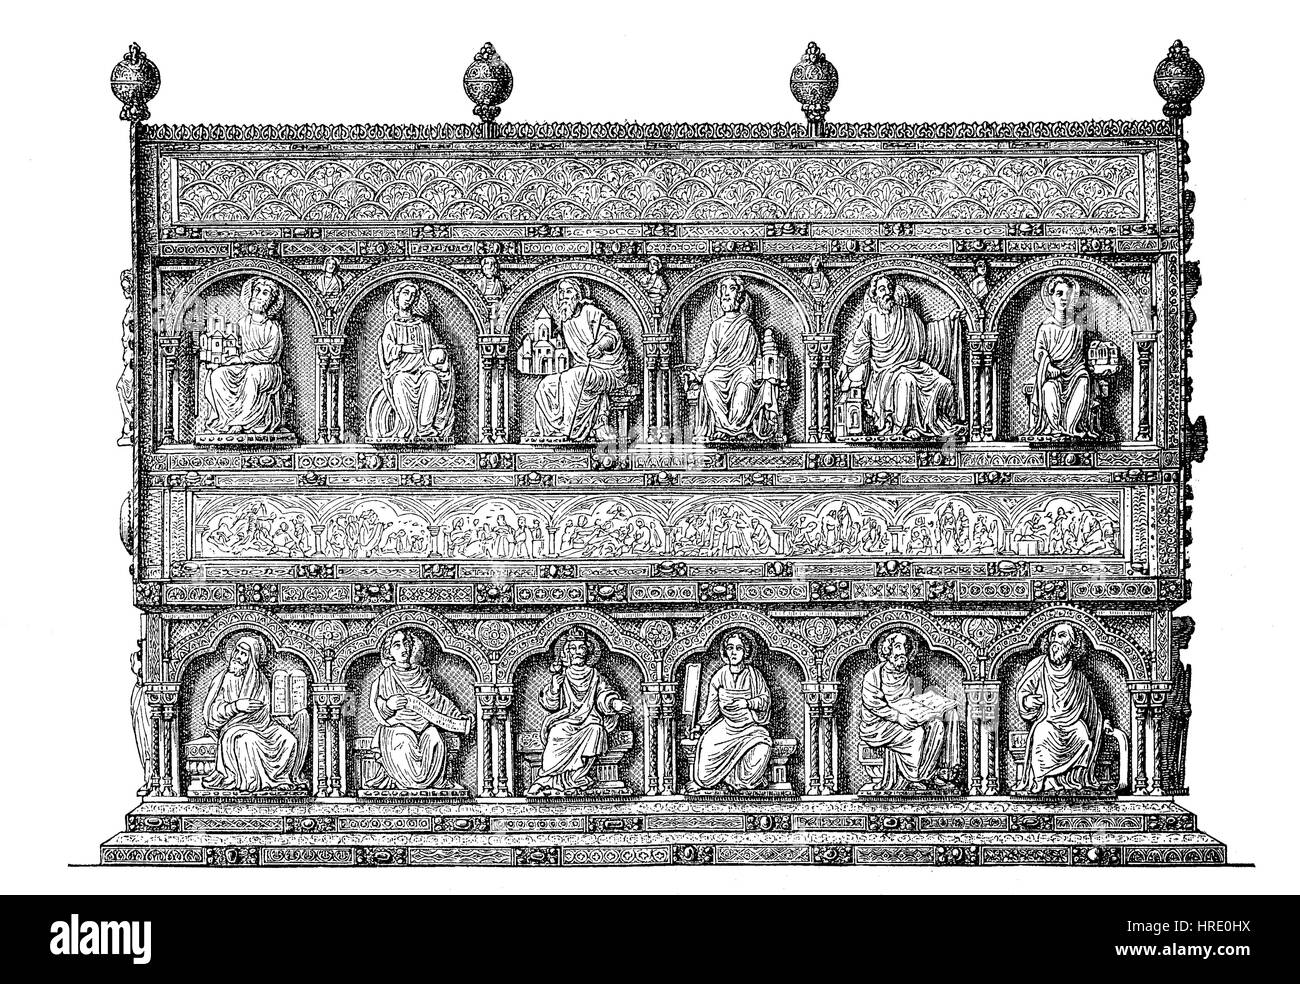 Instruments liturgiques du Moyen Âge, sanctuaire de la sainte relique trois rois, dans la cathédrale de Cologne, Allemagne, la reproduction d'une gravure sur bois du xixe siècle, 1885 Banque D'Images